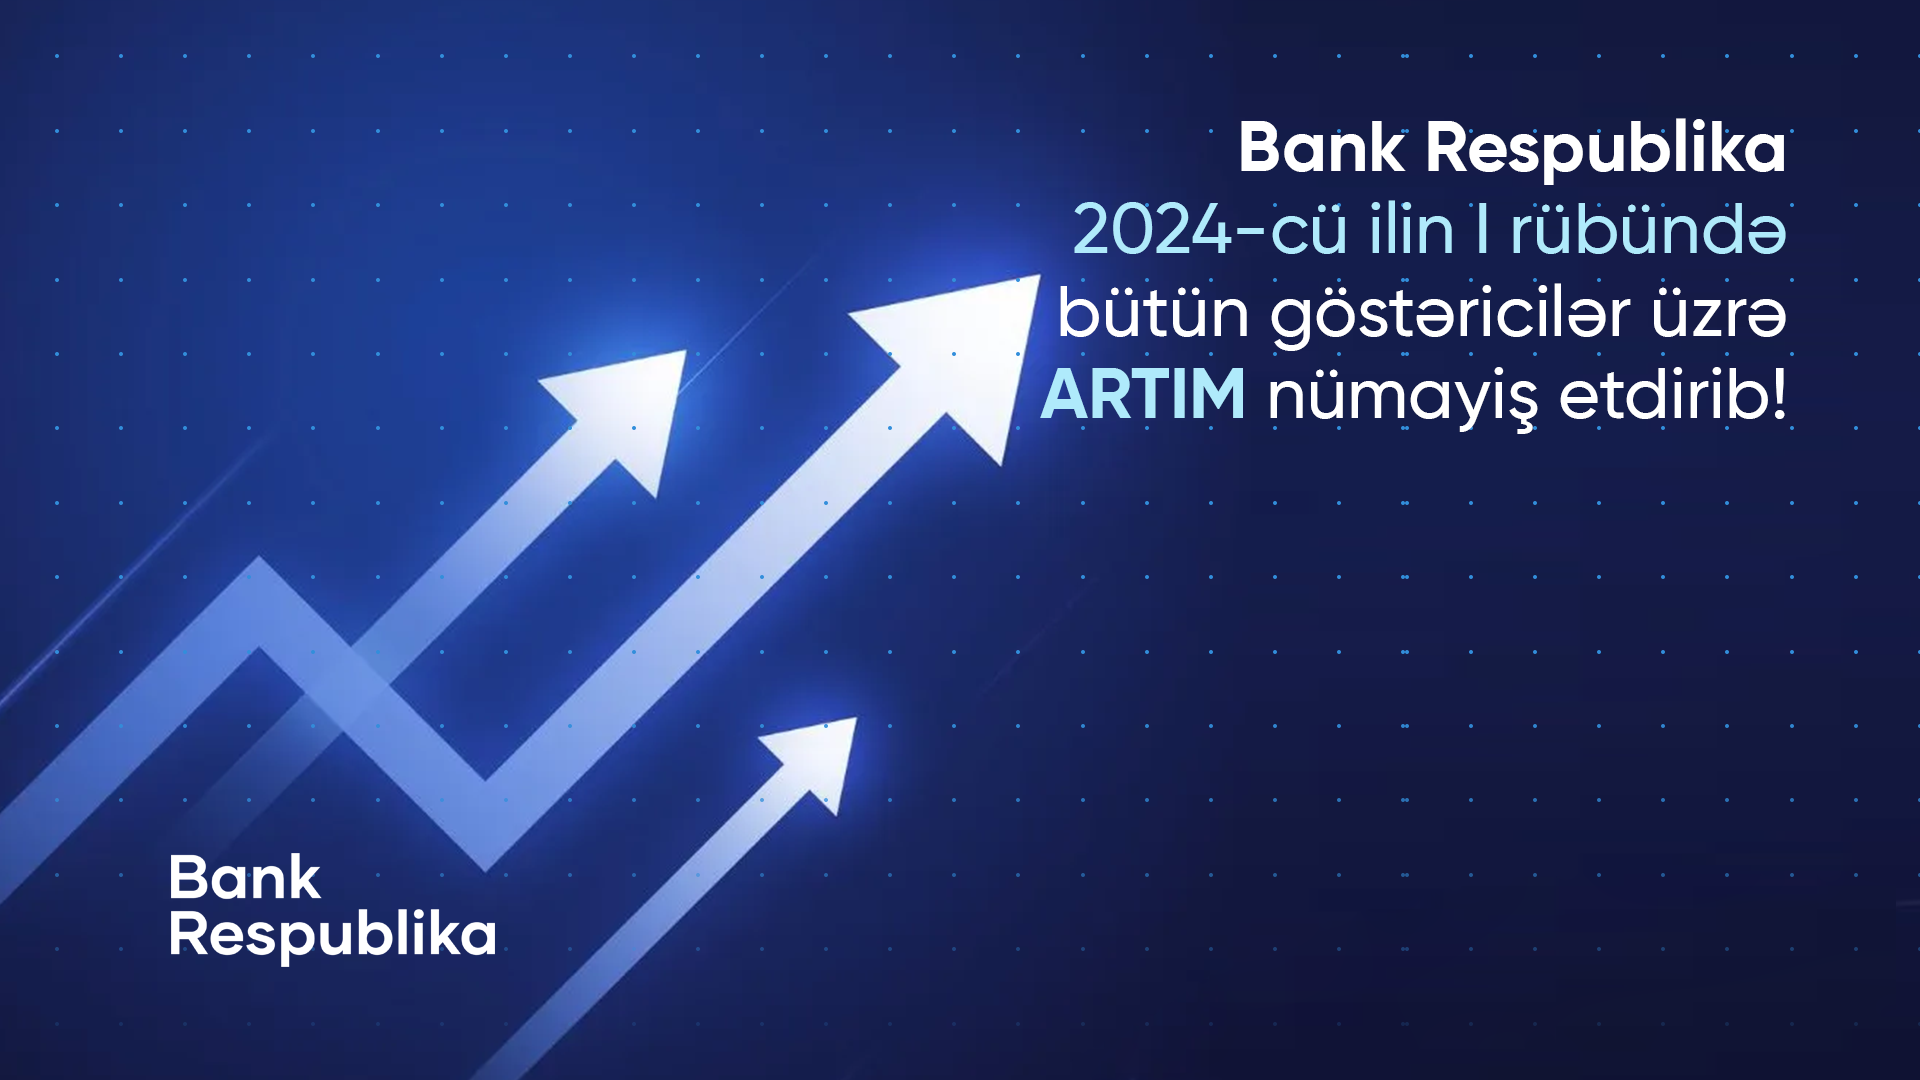 Банк Республика показал прирост по всем показателям в первом квартале